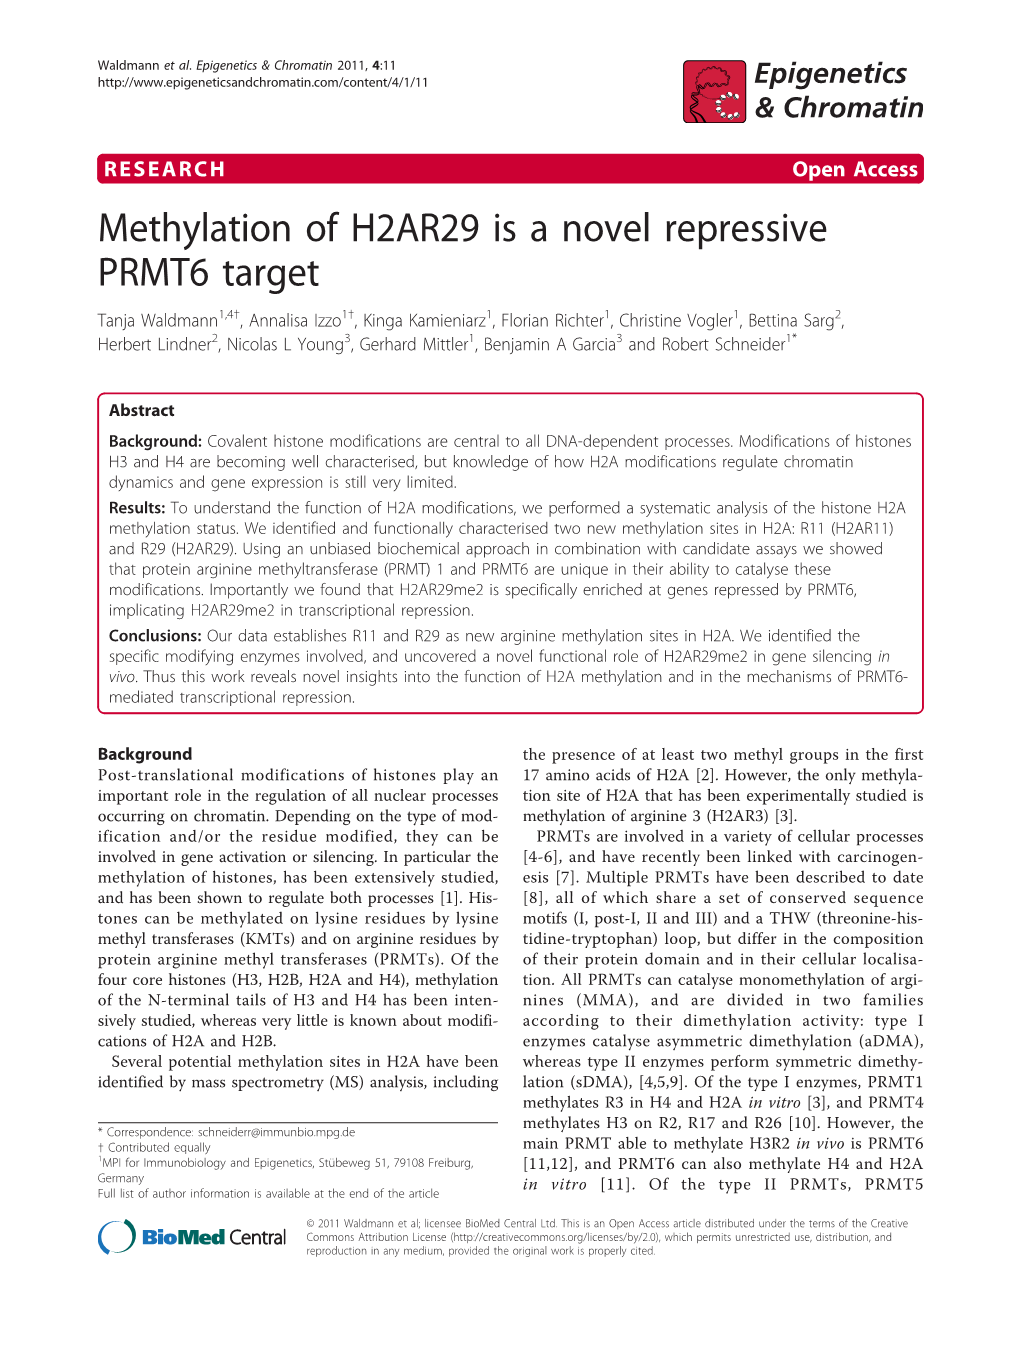 Methylation of H2AR29 Is a Novel Repressive PRMT6 Target